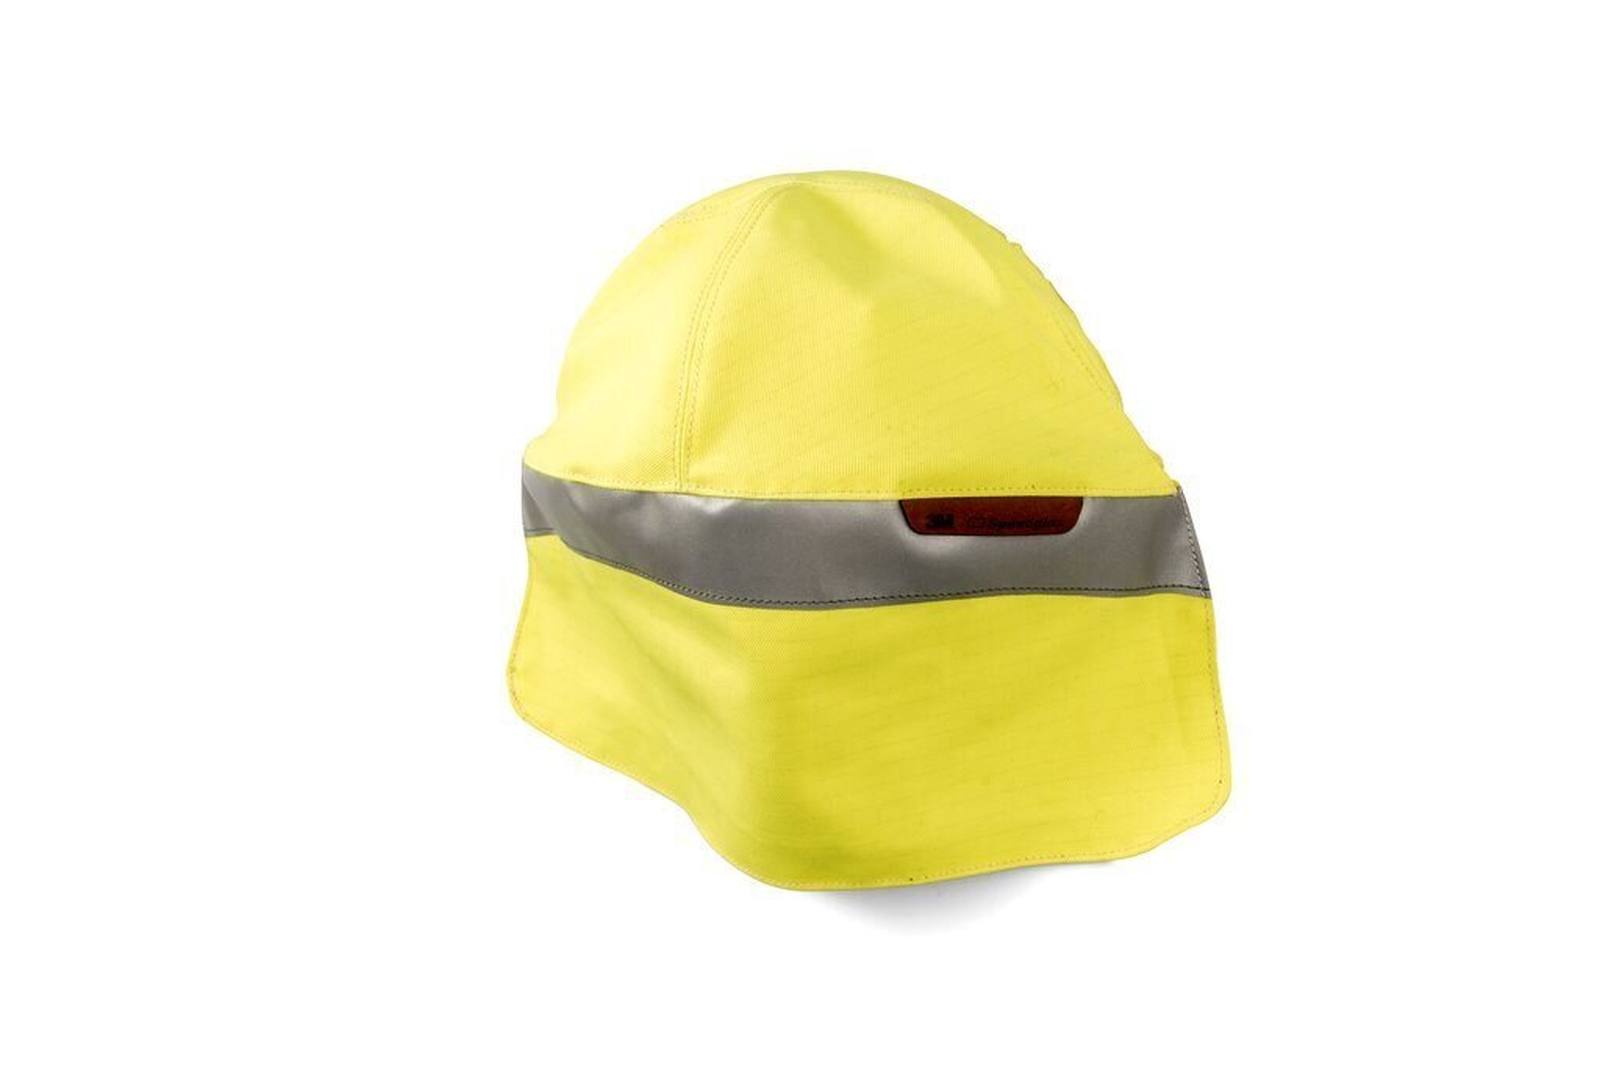 3M fluoreszierend-gelber Kopfschutz aus Stoff für 3M Speedglas Hochleistungs-Schweißmaske G5-01, H169021